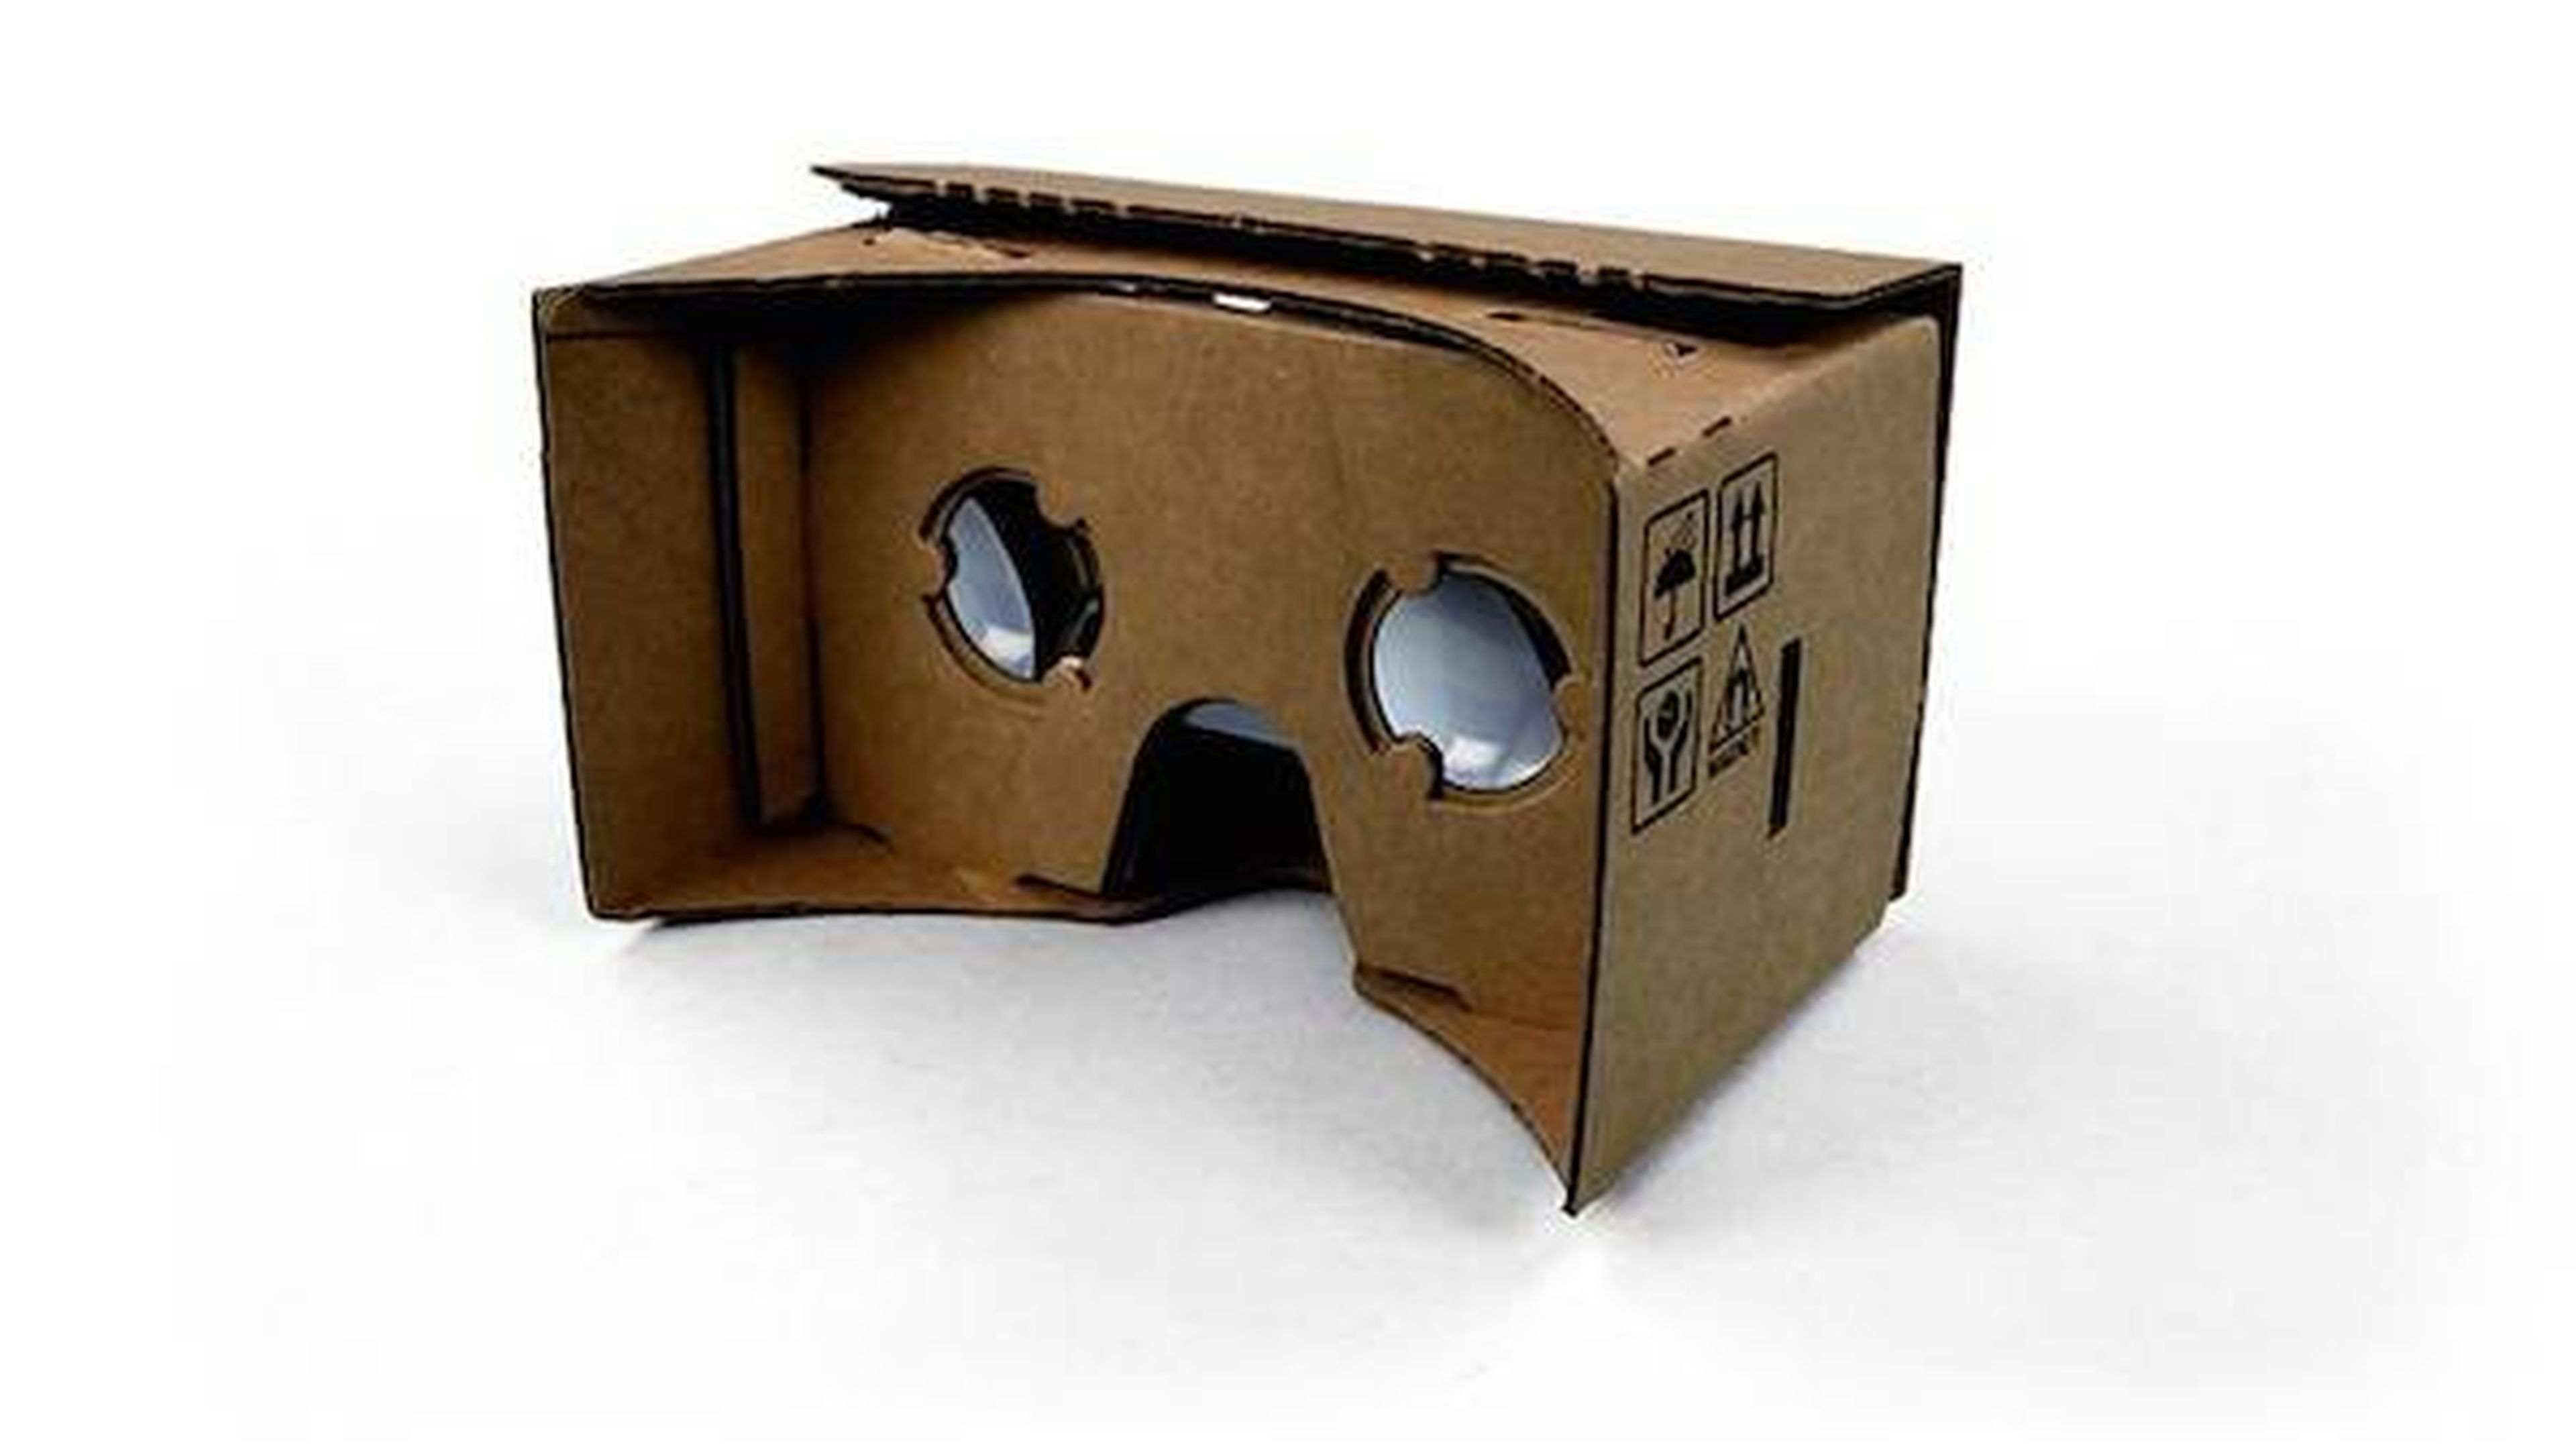 Cardboard, gafas de RV improvisadas